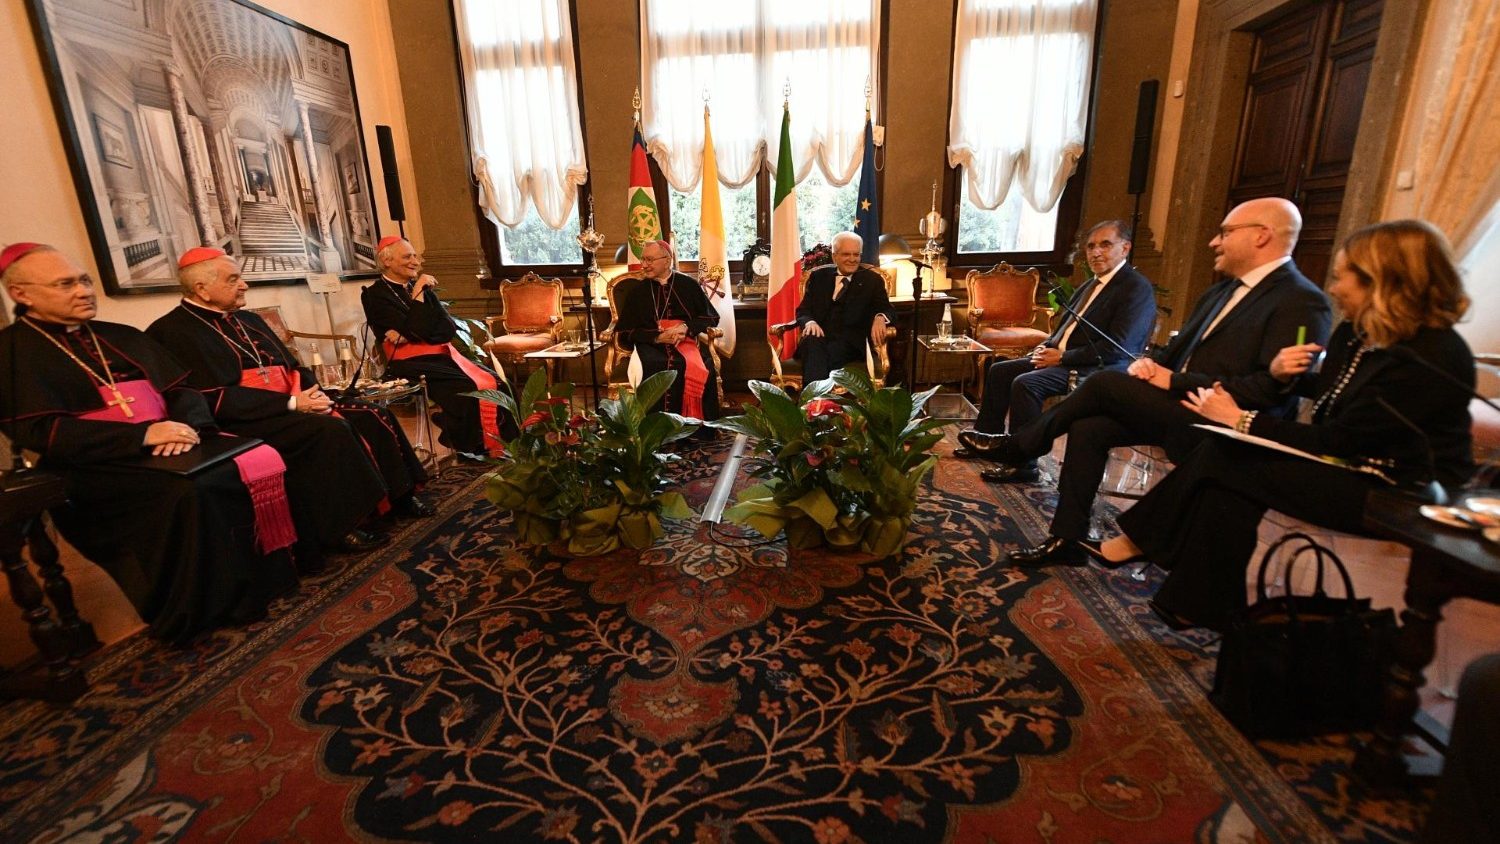 Bilateral Italia-Santa Sede en el Laterano